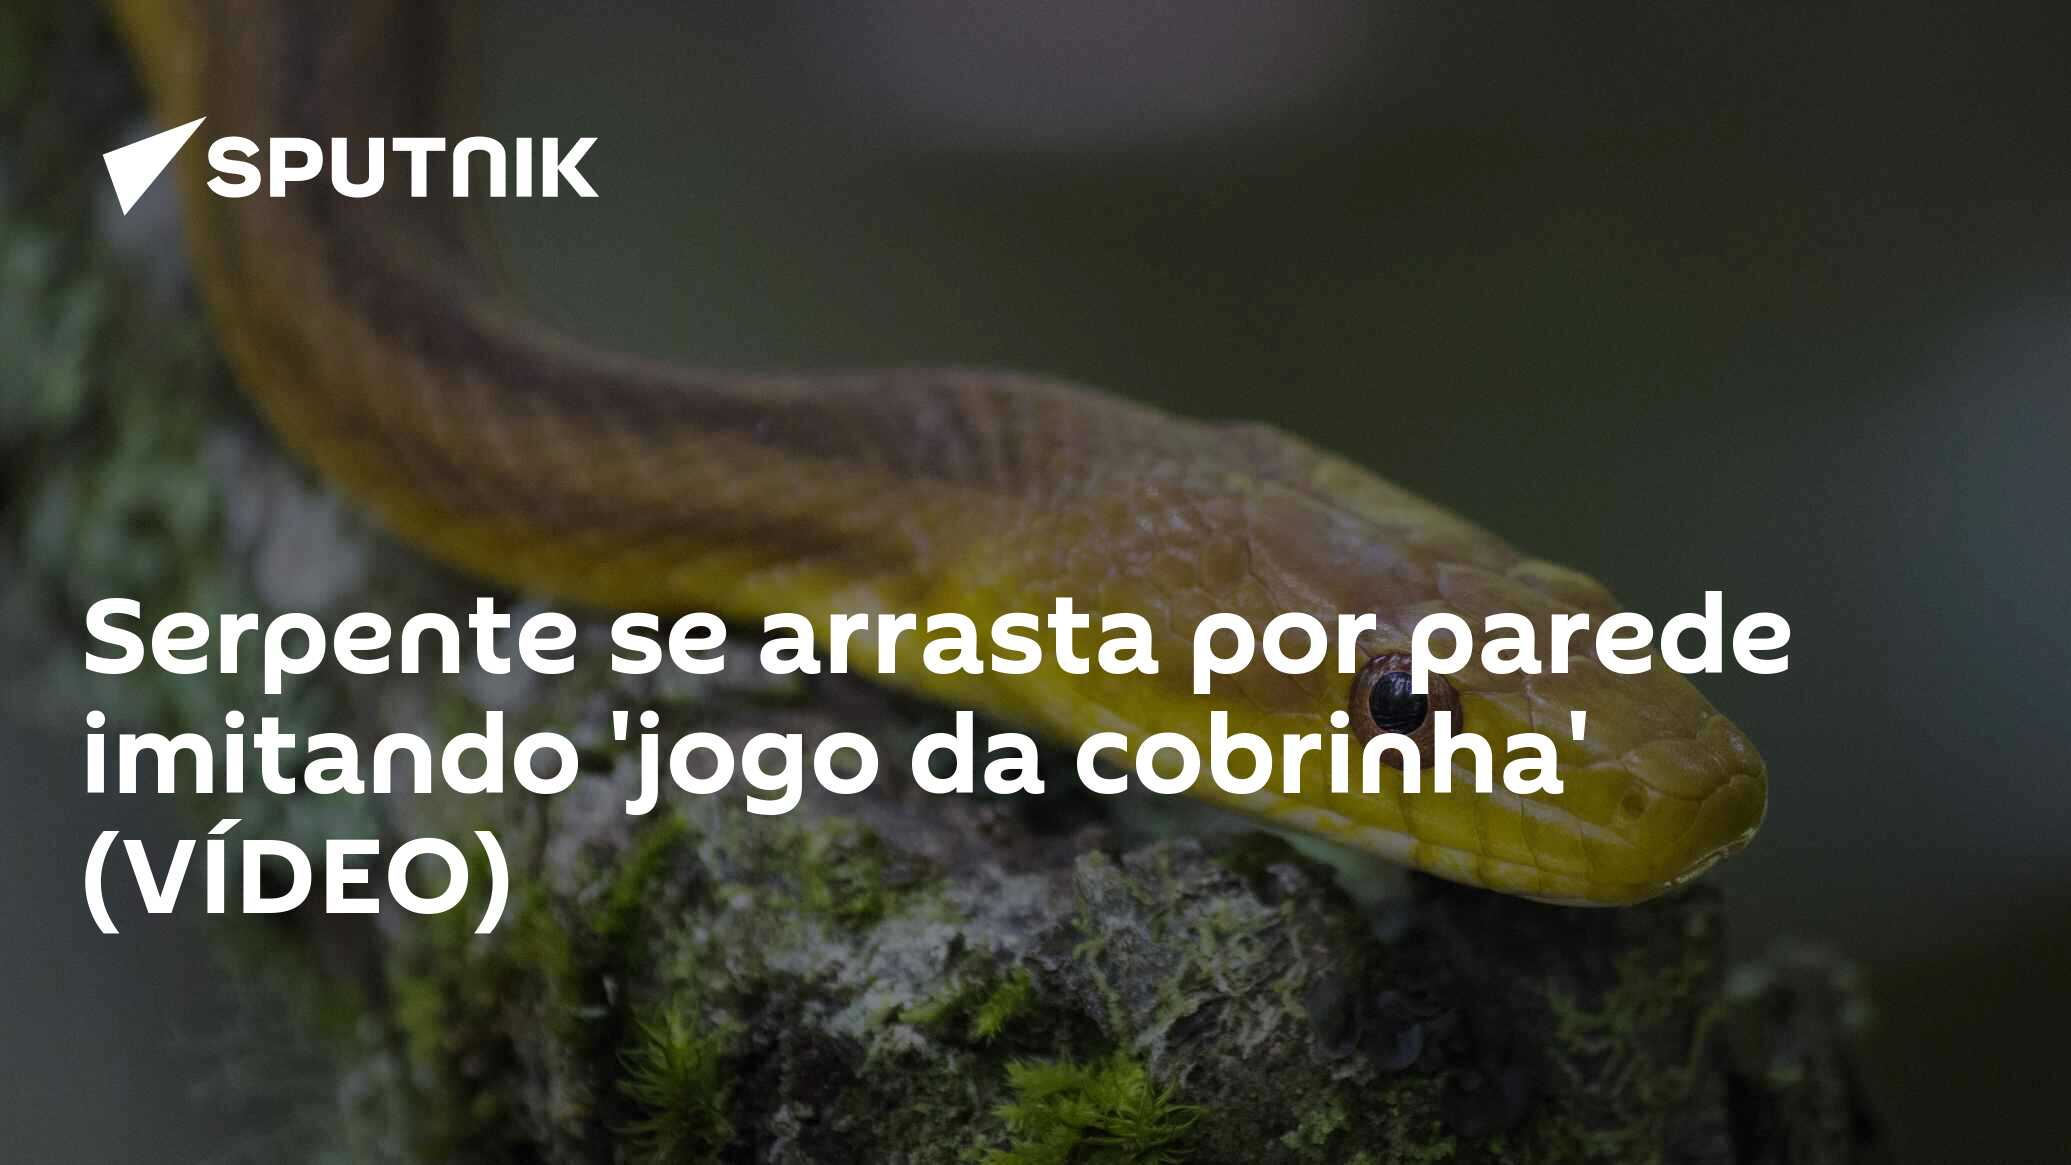 Serpente se arrasta por parede imitando 'jogo da cobrinha' (VÍDEO) -  29.06.2018, Sputnik Brasil